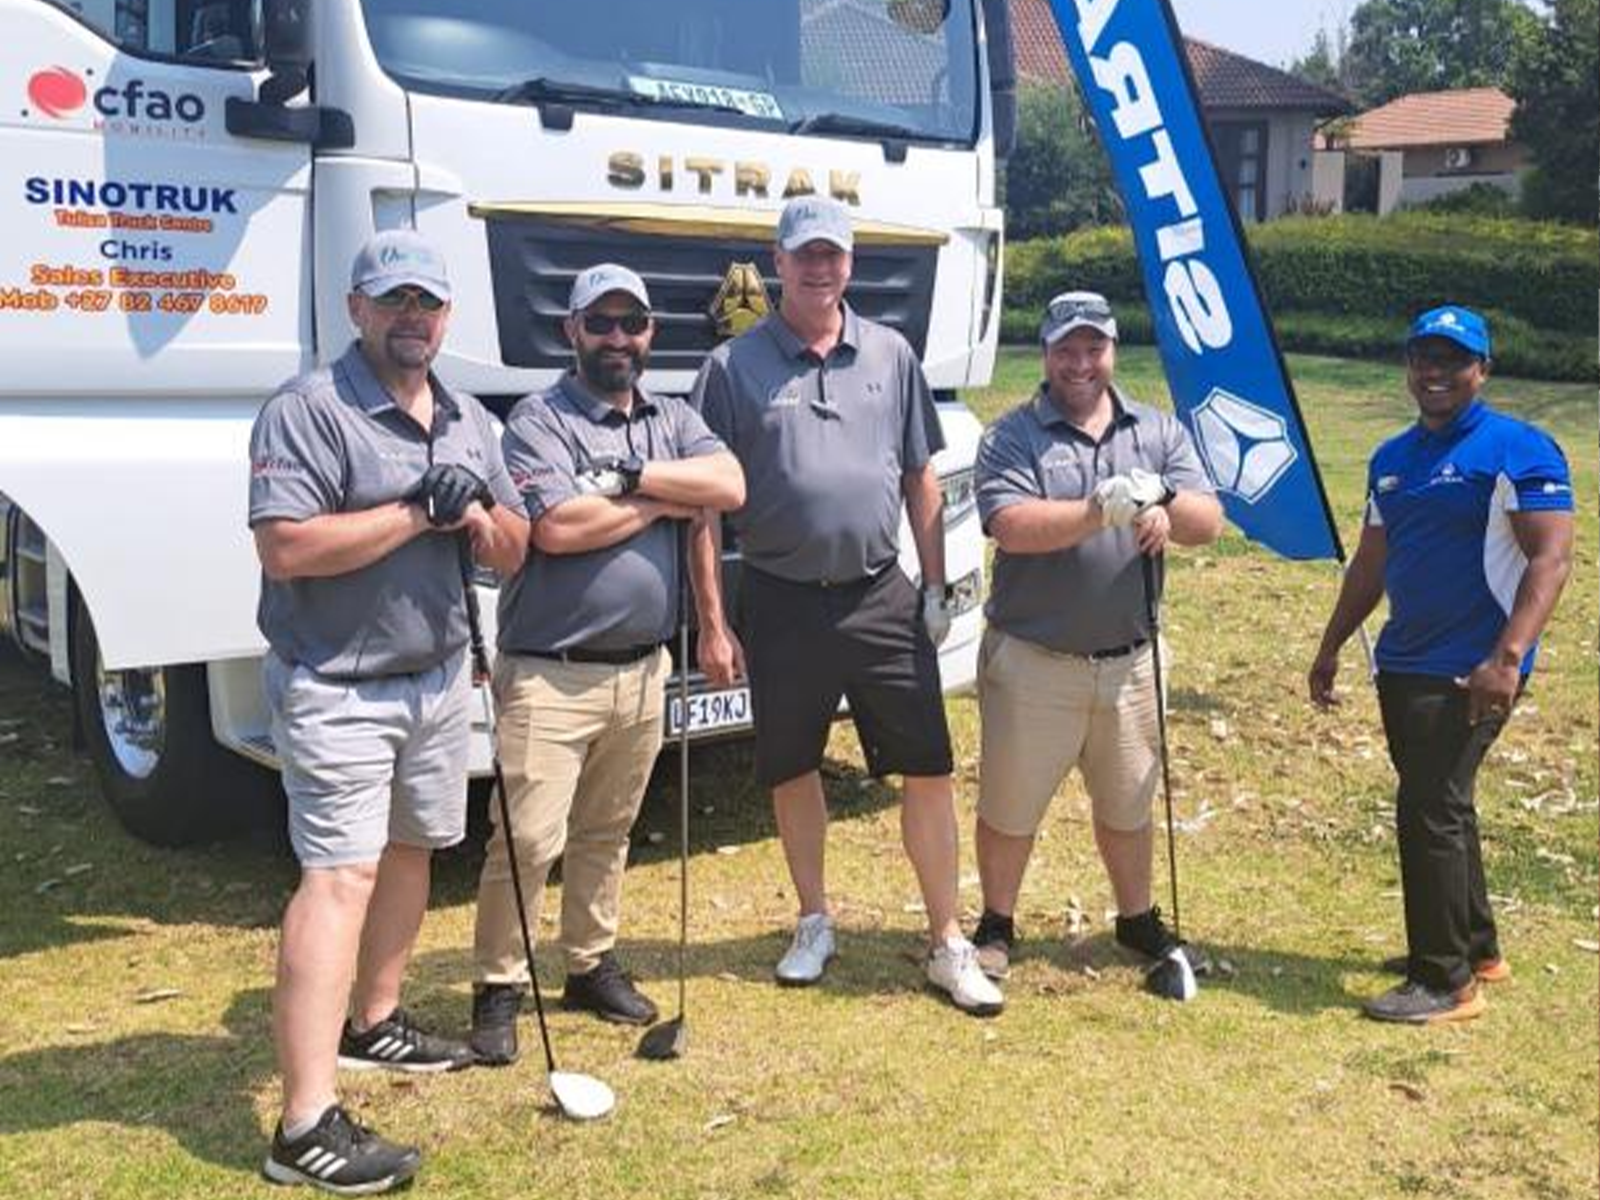 2023年南非经销商CFAO在NWK Grip4 Charity Golfday上的推广活动。